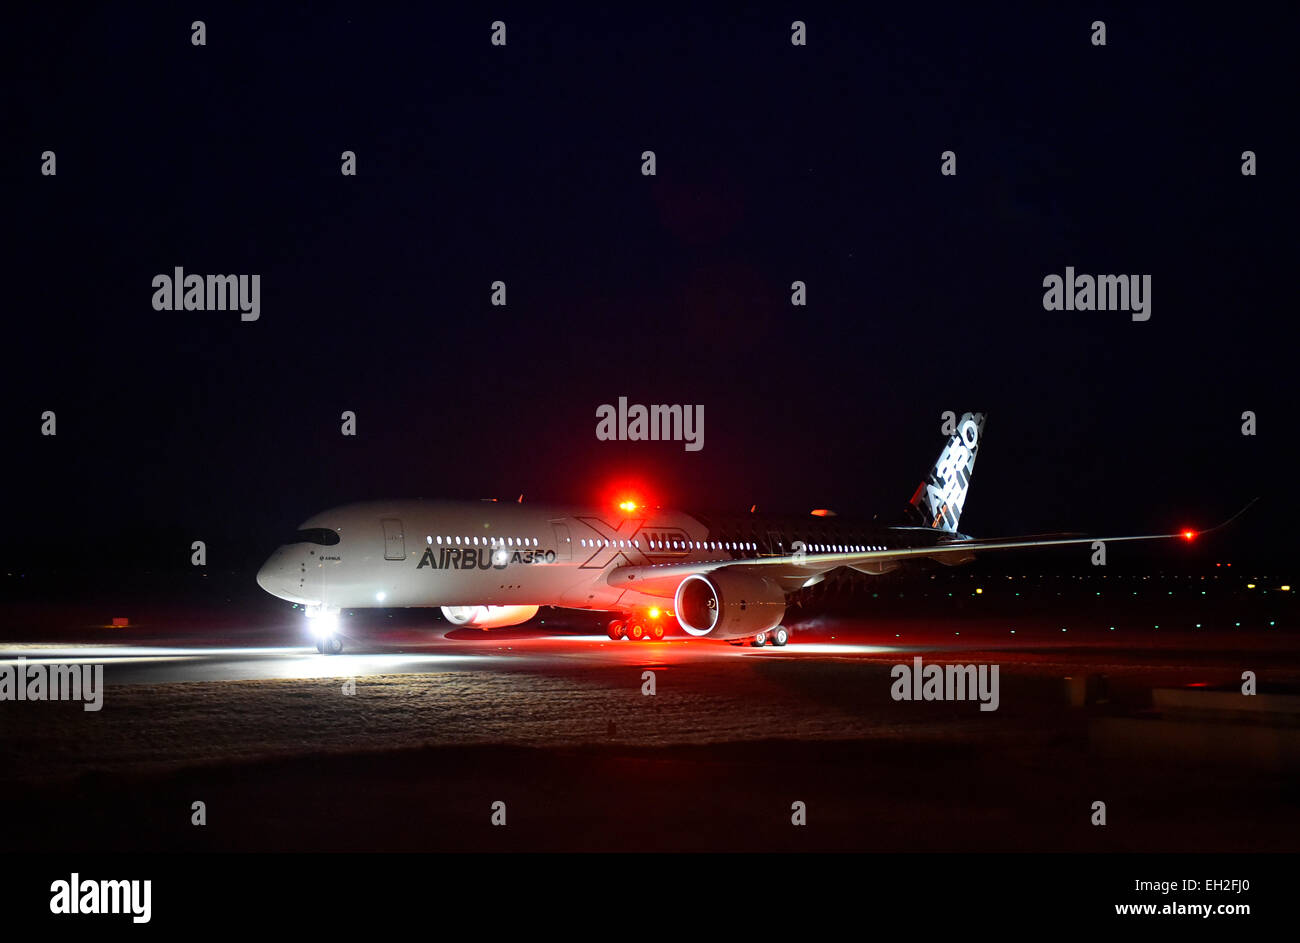 https://c8.alamy.com/compde/eh2fj0/airbus-ein-350-900-xwb-flugzeuge-flugzeug-flugzeug-acl-anti-kollision-licht-flughafen-munchen-ubersicht-panorama-aussicht-nacht-eh2fj0.jpg